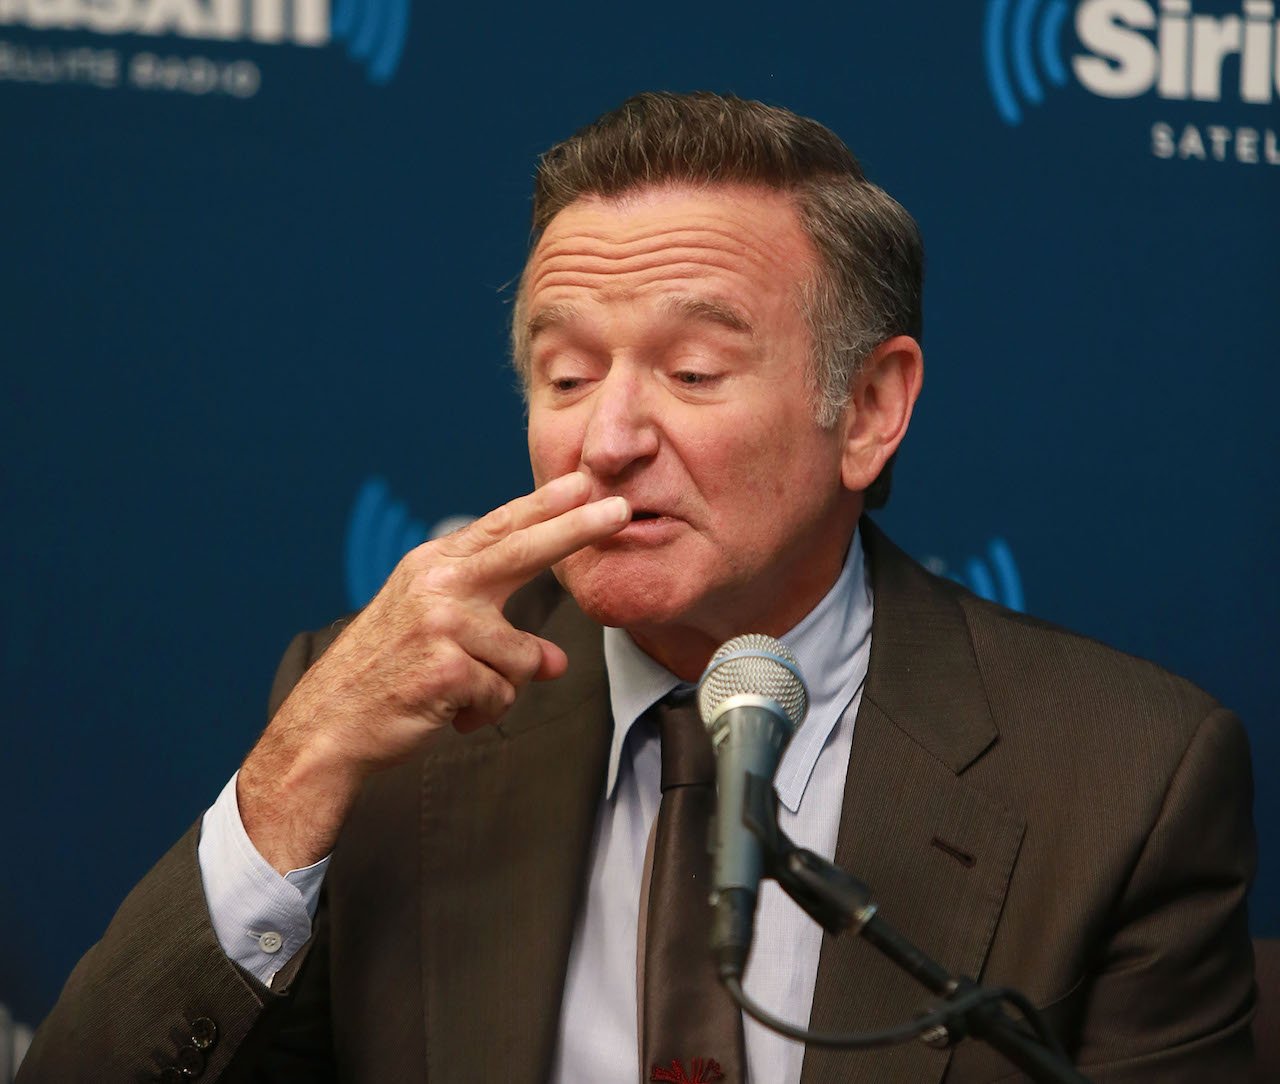 Robin Williams pretends to take a puff off a cigarette